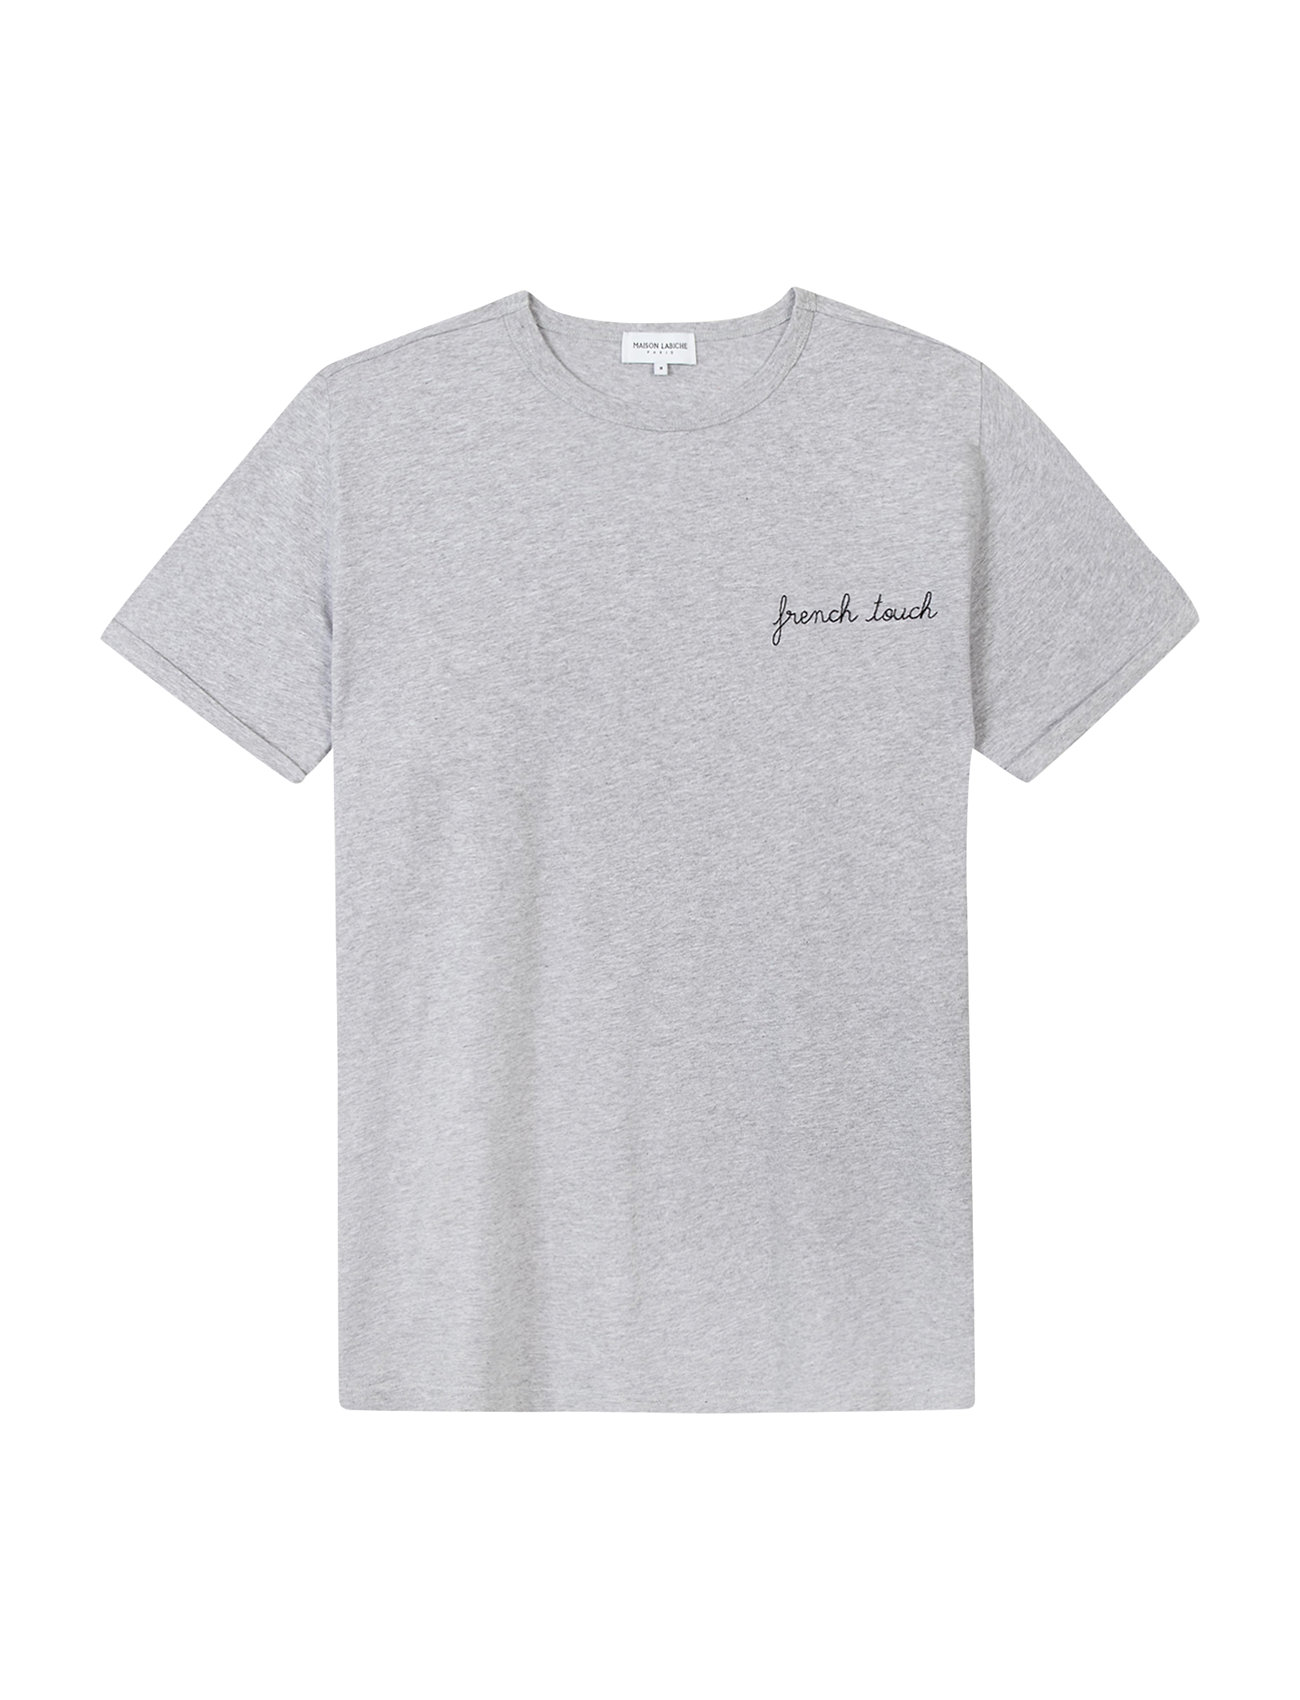 Poitou French Touch/Gots Designers T-shirts Short-sleeved Grey Maison Labiche Paris